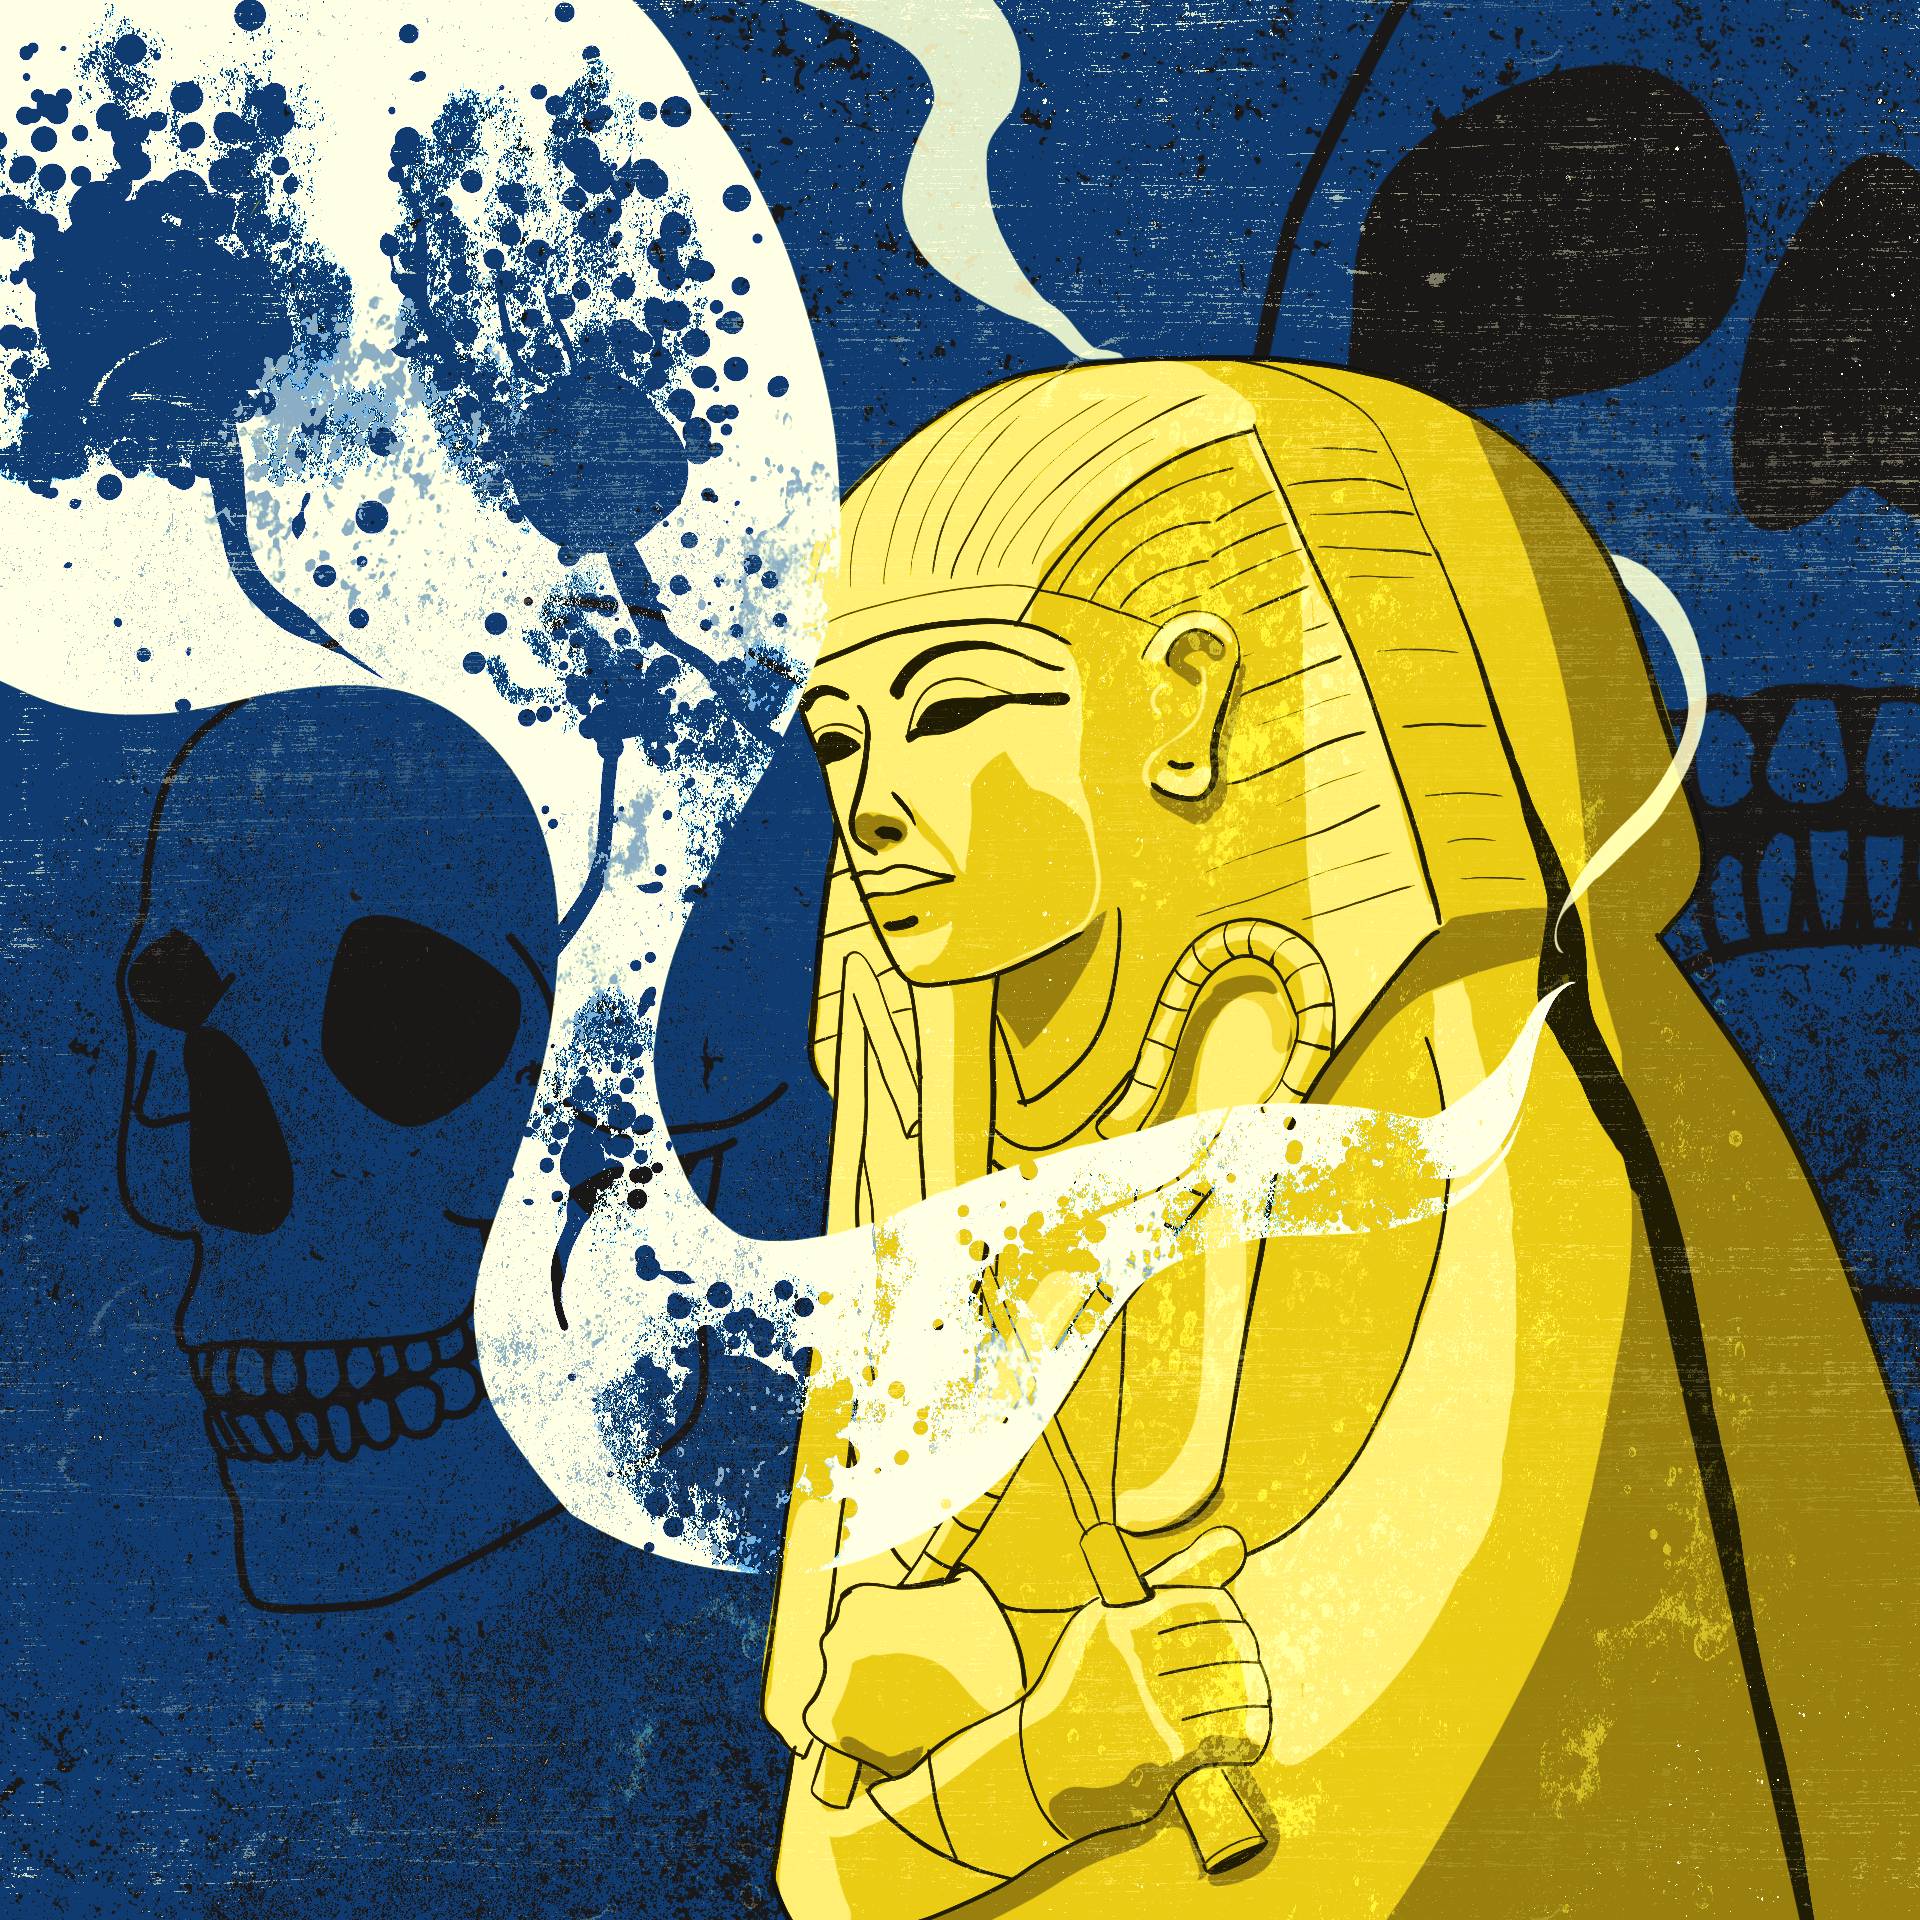 Ilustracja – sarkofag faraona Tutenhamona, z którego wydobywają się opary zawierające zarodniki grzybów, w tle trupie czaszki